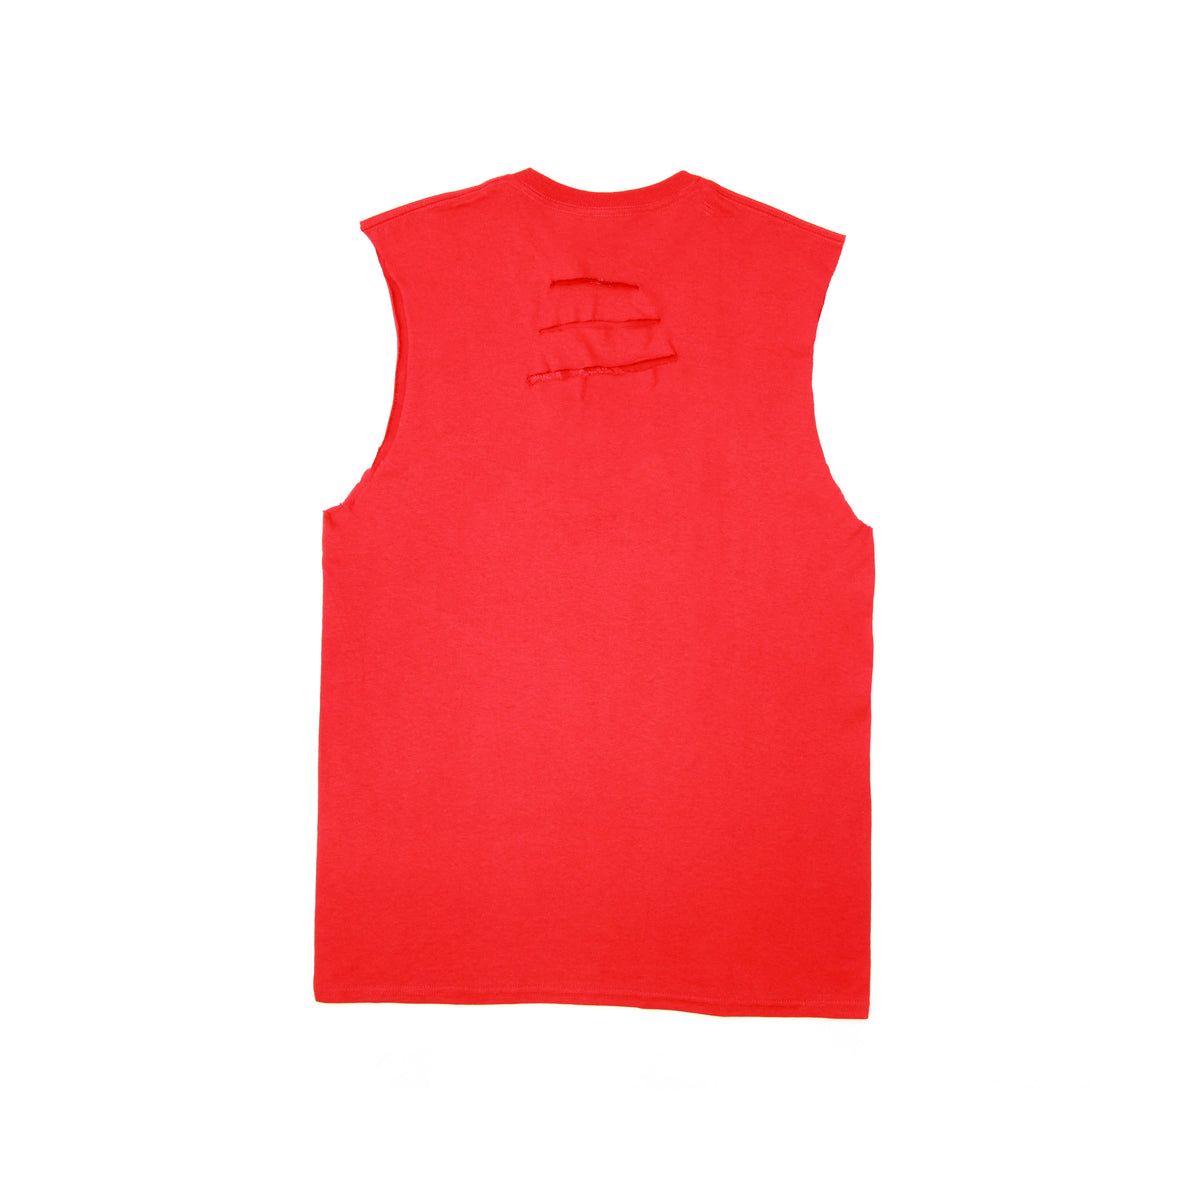 sleeveless red shirt